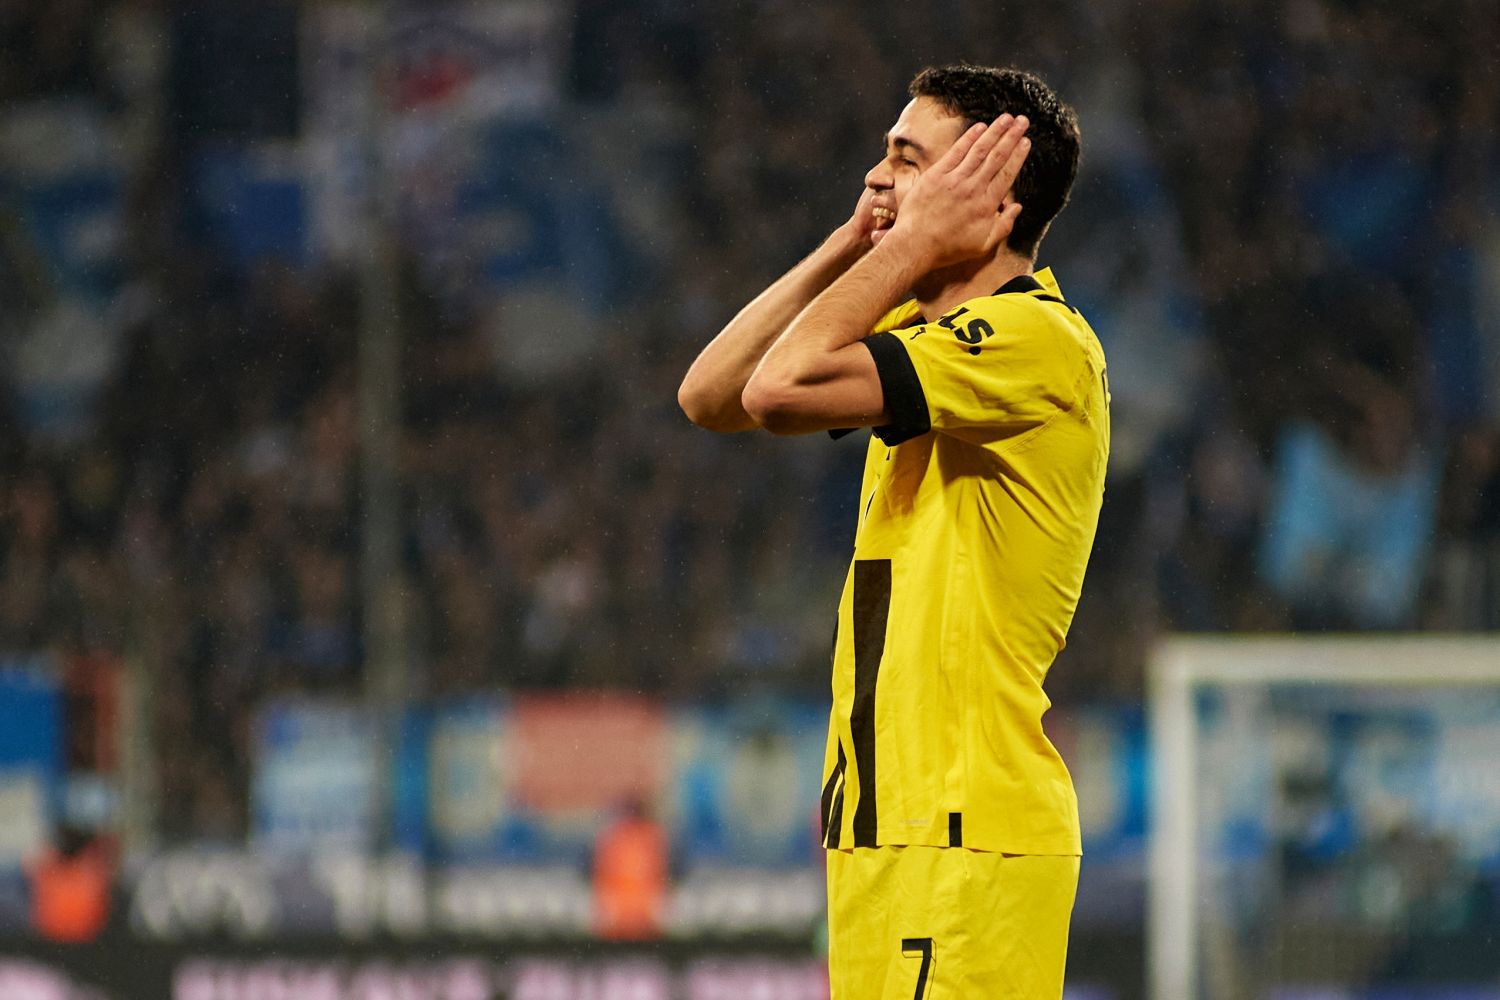 To koniec! Borussia Dortmund skreśliła gracza, któremu wróżono wielką karierę